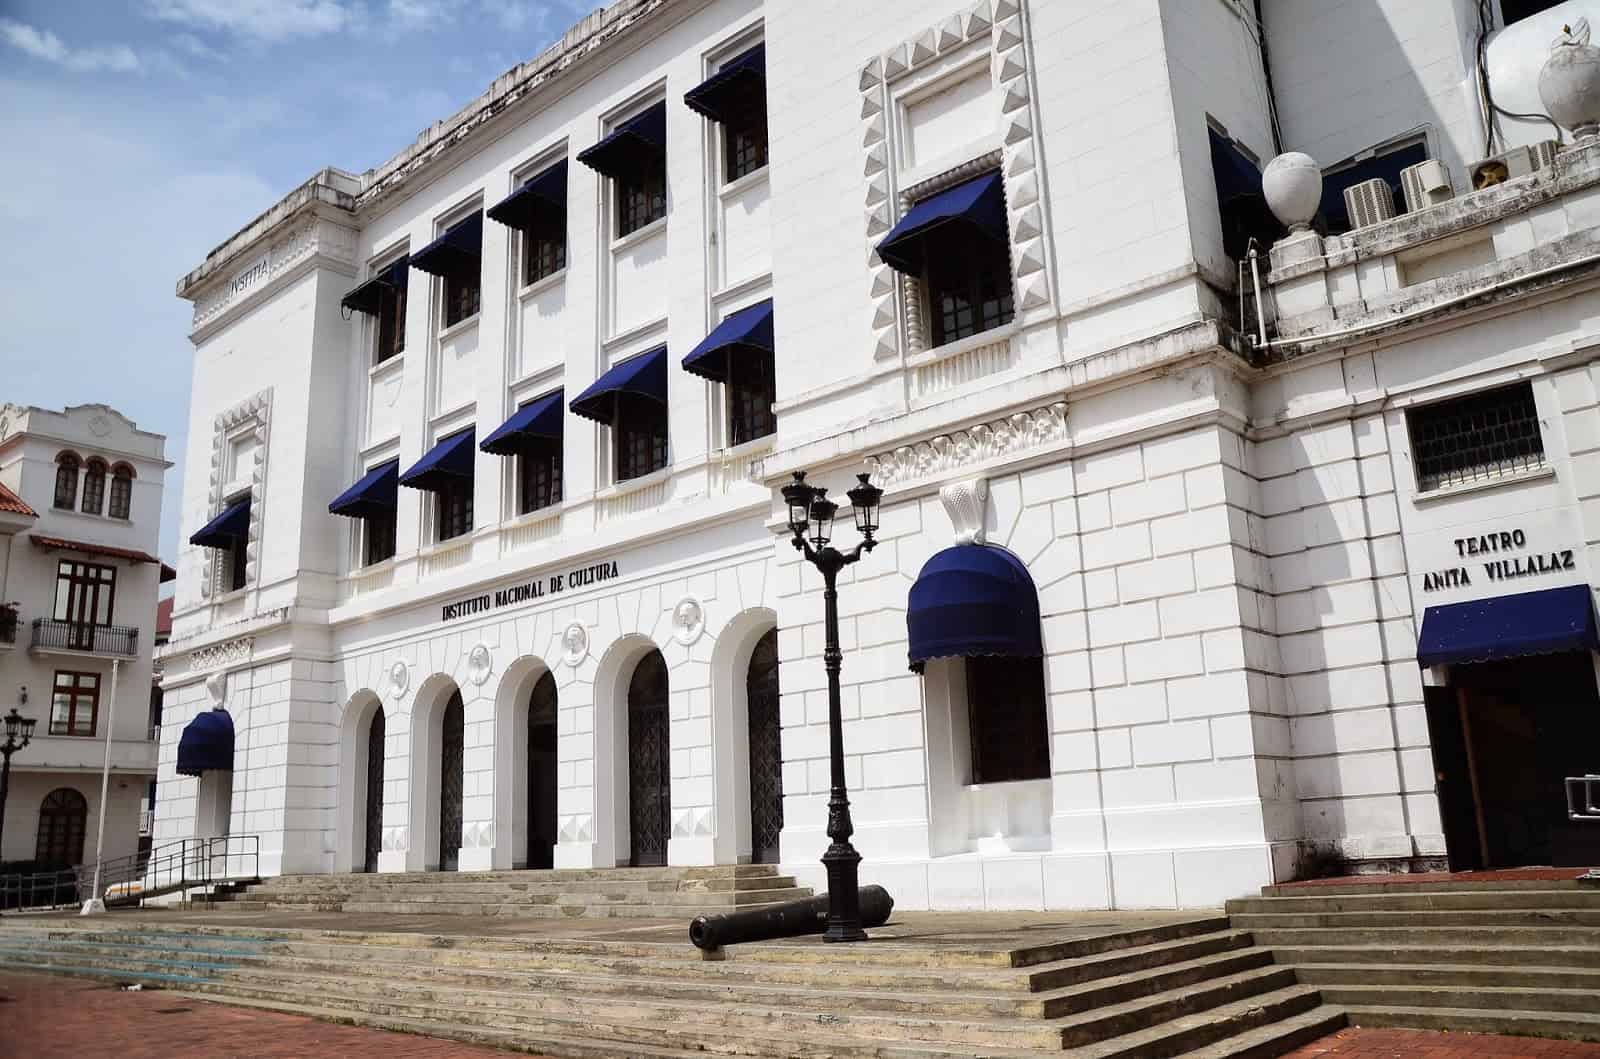 Instituto Nacional de Cultura at Plaza de Francia in Casco Viejo, Panama City